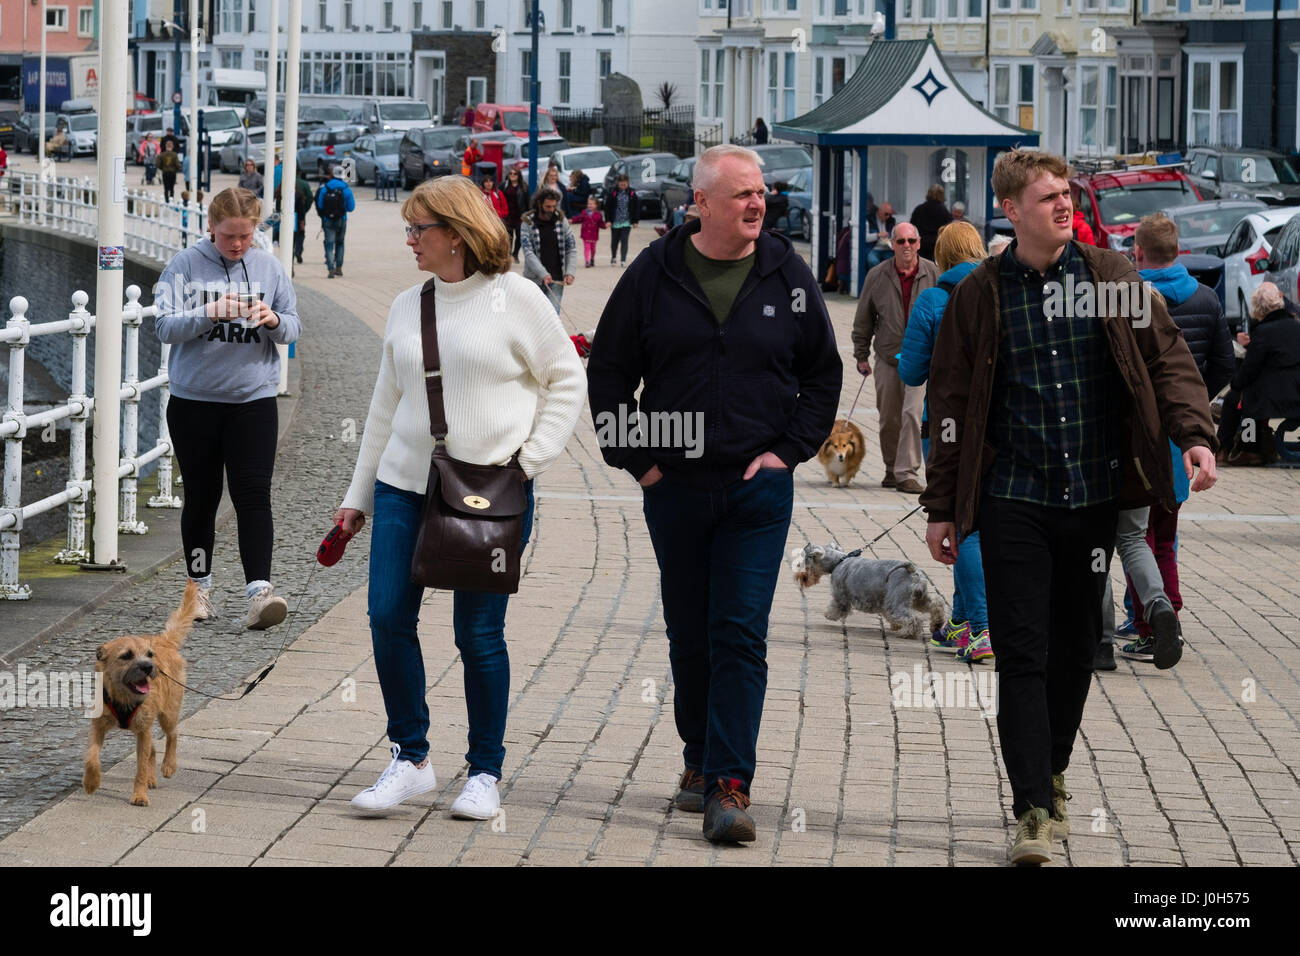 Aberystwyth Wales UK, giovedì 13 aprile 2017 UK Meteo: gente camminare sul lungomare in un freddo ma luminoso e breezy day in Aberystwyth Wales, alla vigilia delle vacanze di Pasqua Photo credit: Keith Morris/Alamy Live News Foto Stock